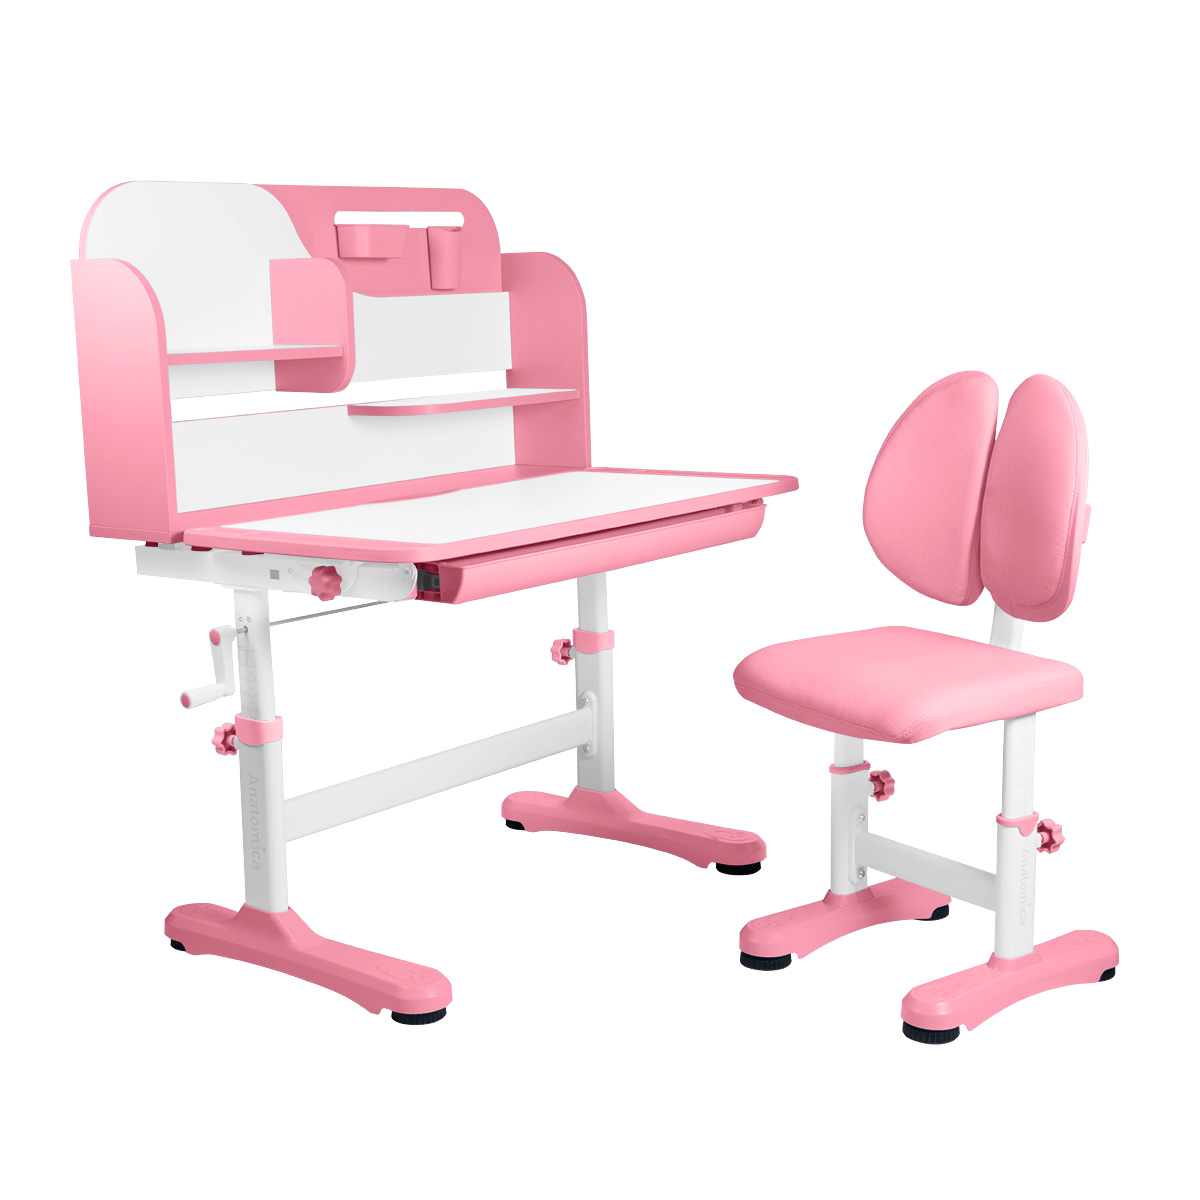 Комплект Anatomica Amadeo парта, стул, надстройка, выдвижной ящик, розовый anatomica комплект amadeo парта стул надстройка выдвижной ящик